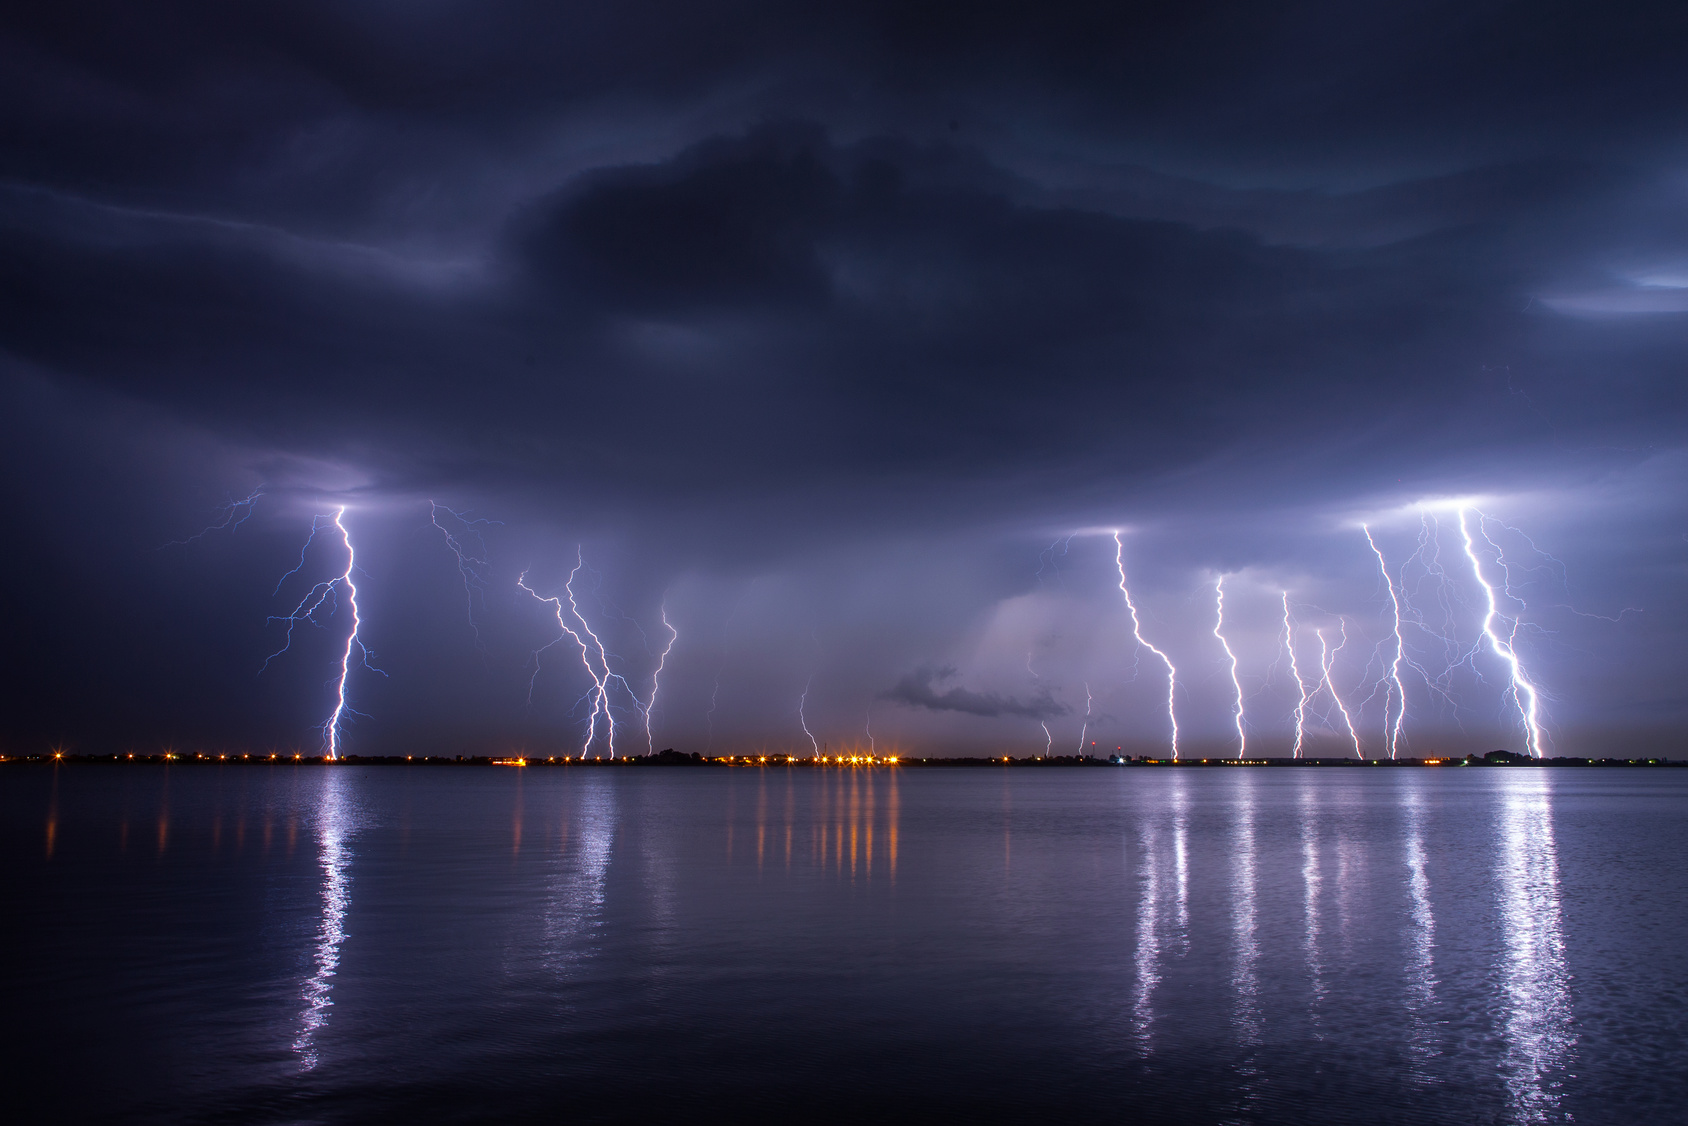 Des coups de tonnerre accompagnent les éclairs qui zèbrent le ciel au cours d’un orage. © danmir12, fotolia